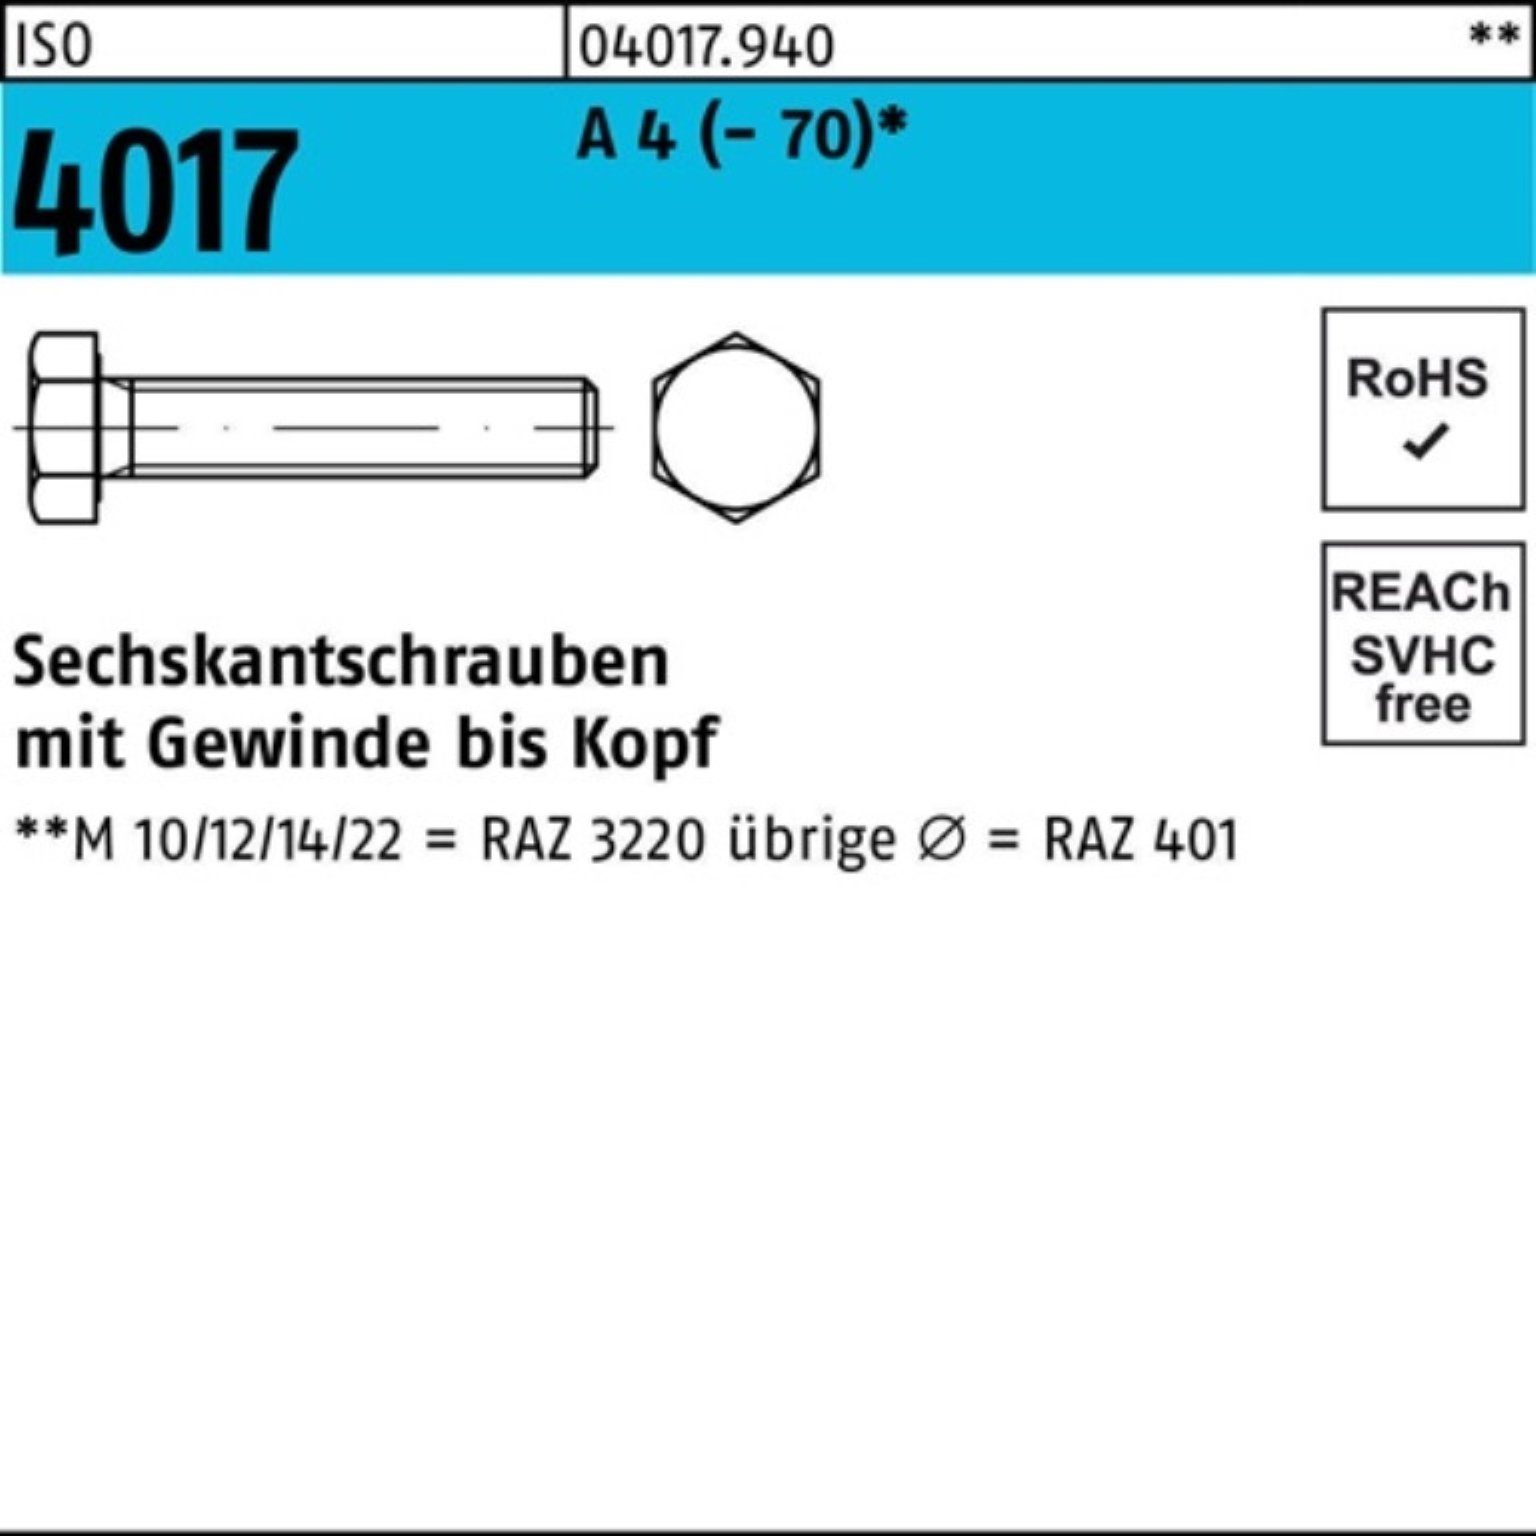 Bufab Sechskantschraube 100er ISO (70) 60 100 A M6x 4 4017 VG Stück Pack Sechskantschraube